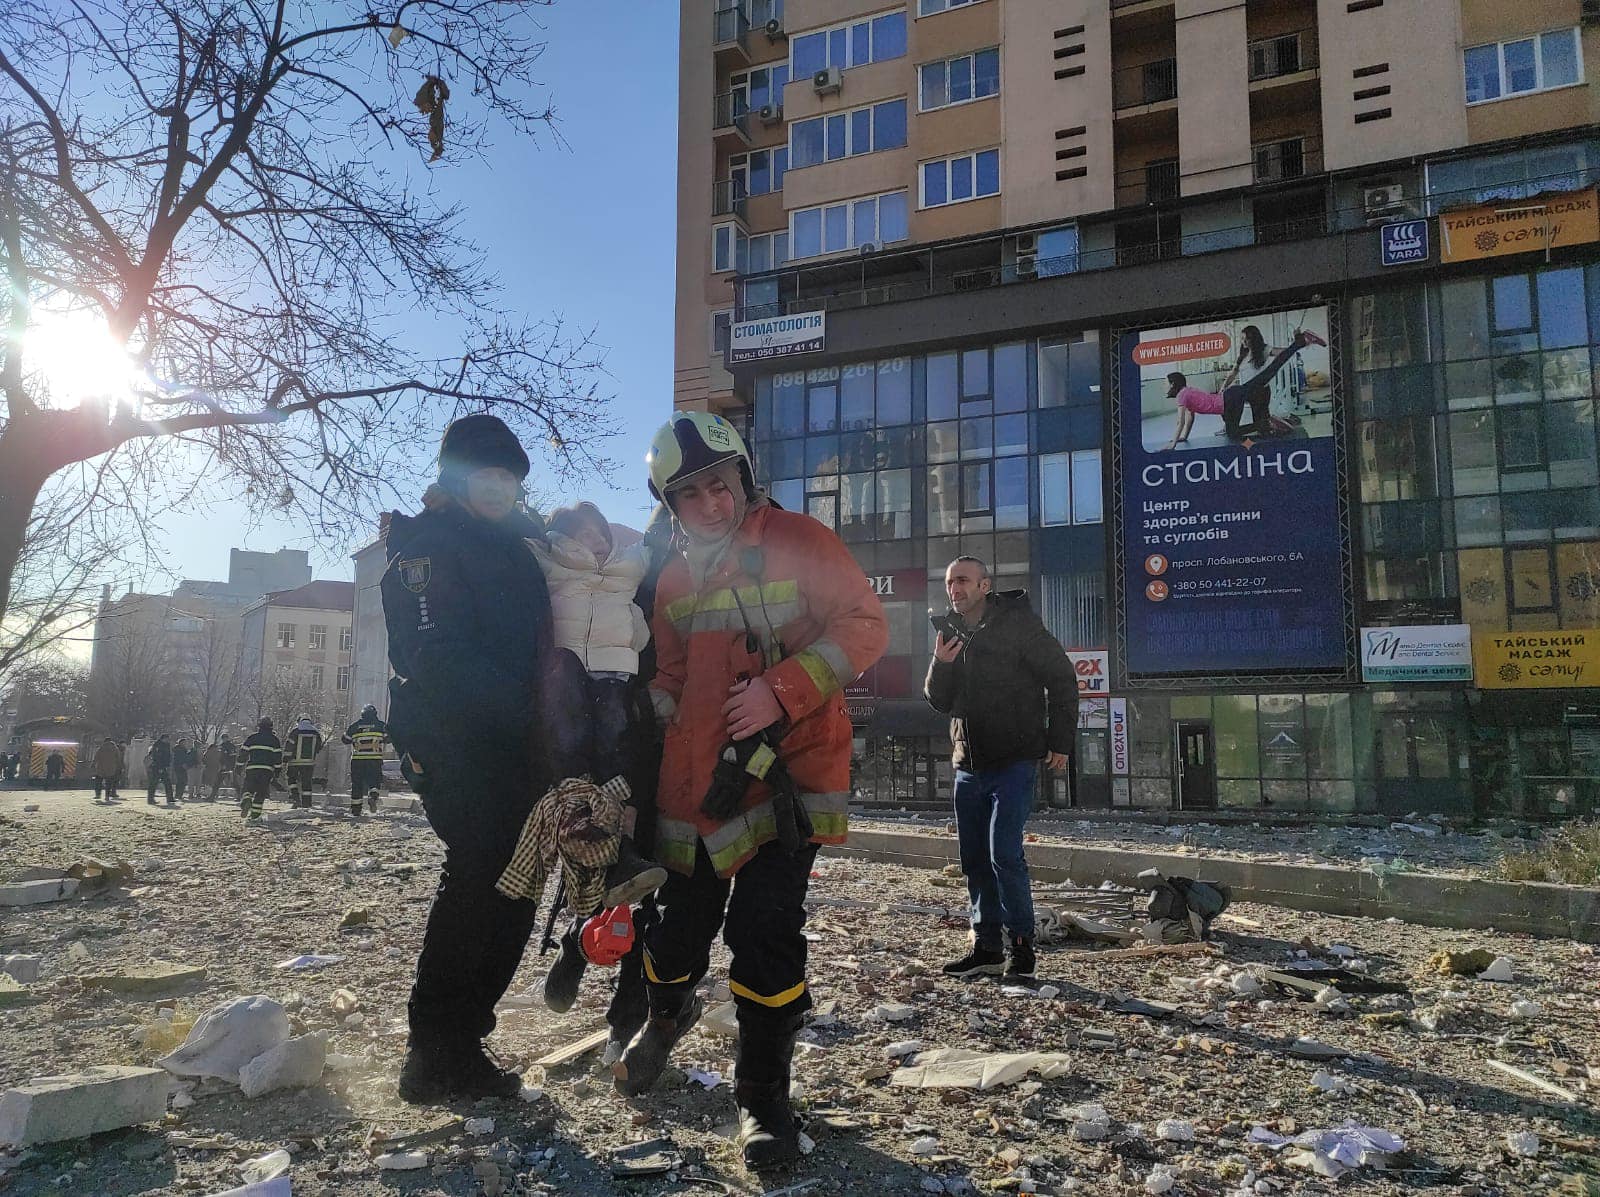 Chùm ảnh Kiev chìm trong khói lửa chiến sự, Ukraine báo cáo hàng trăm thương vong  - Ảnh 7.